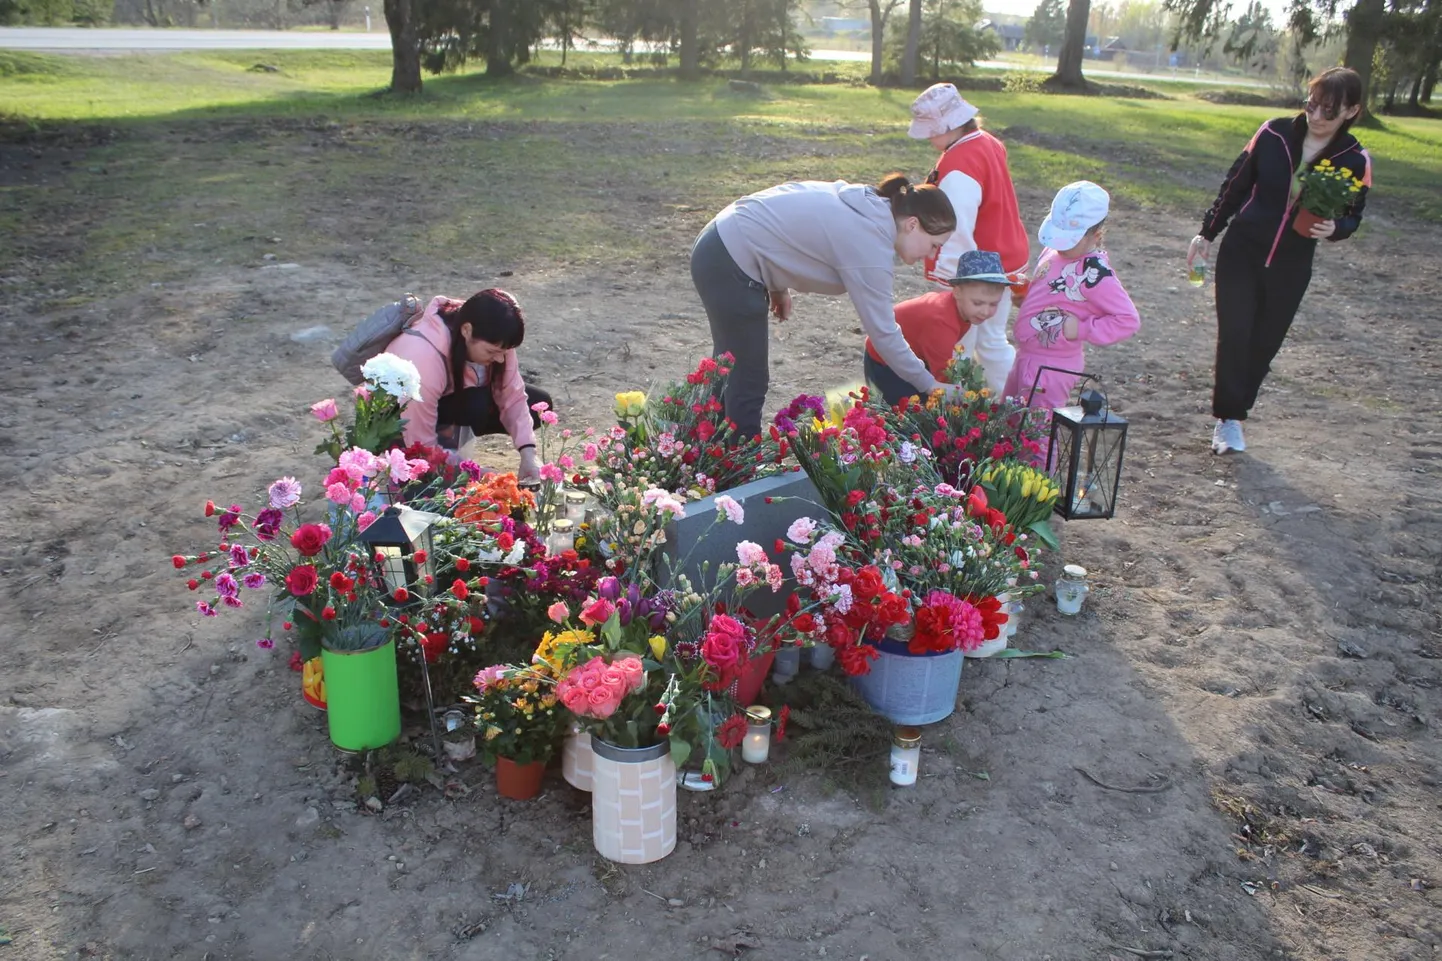 Лена (посередине в серой куртке) и Катя (слева в розовом) со своими детьми несут цветы к бывшему месту братской могилы в Тапа 9 мая.